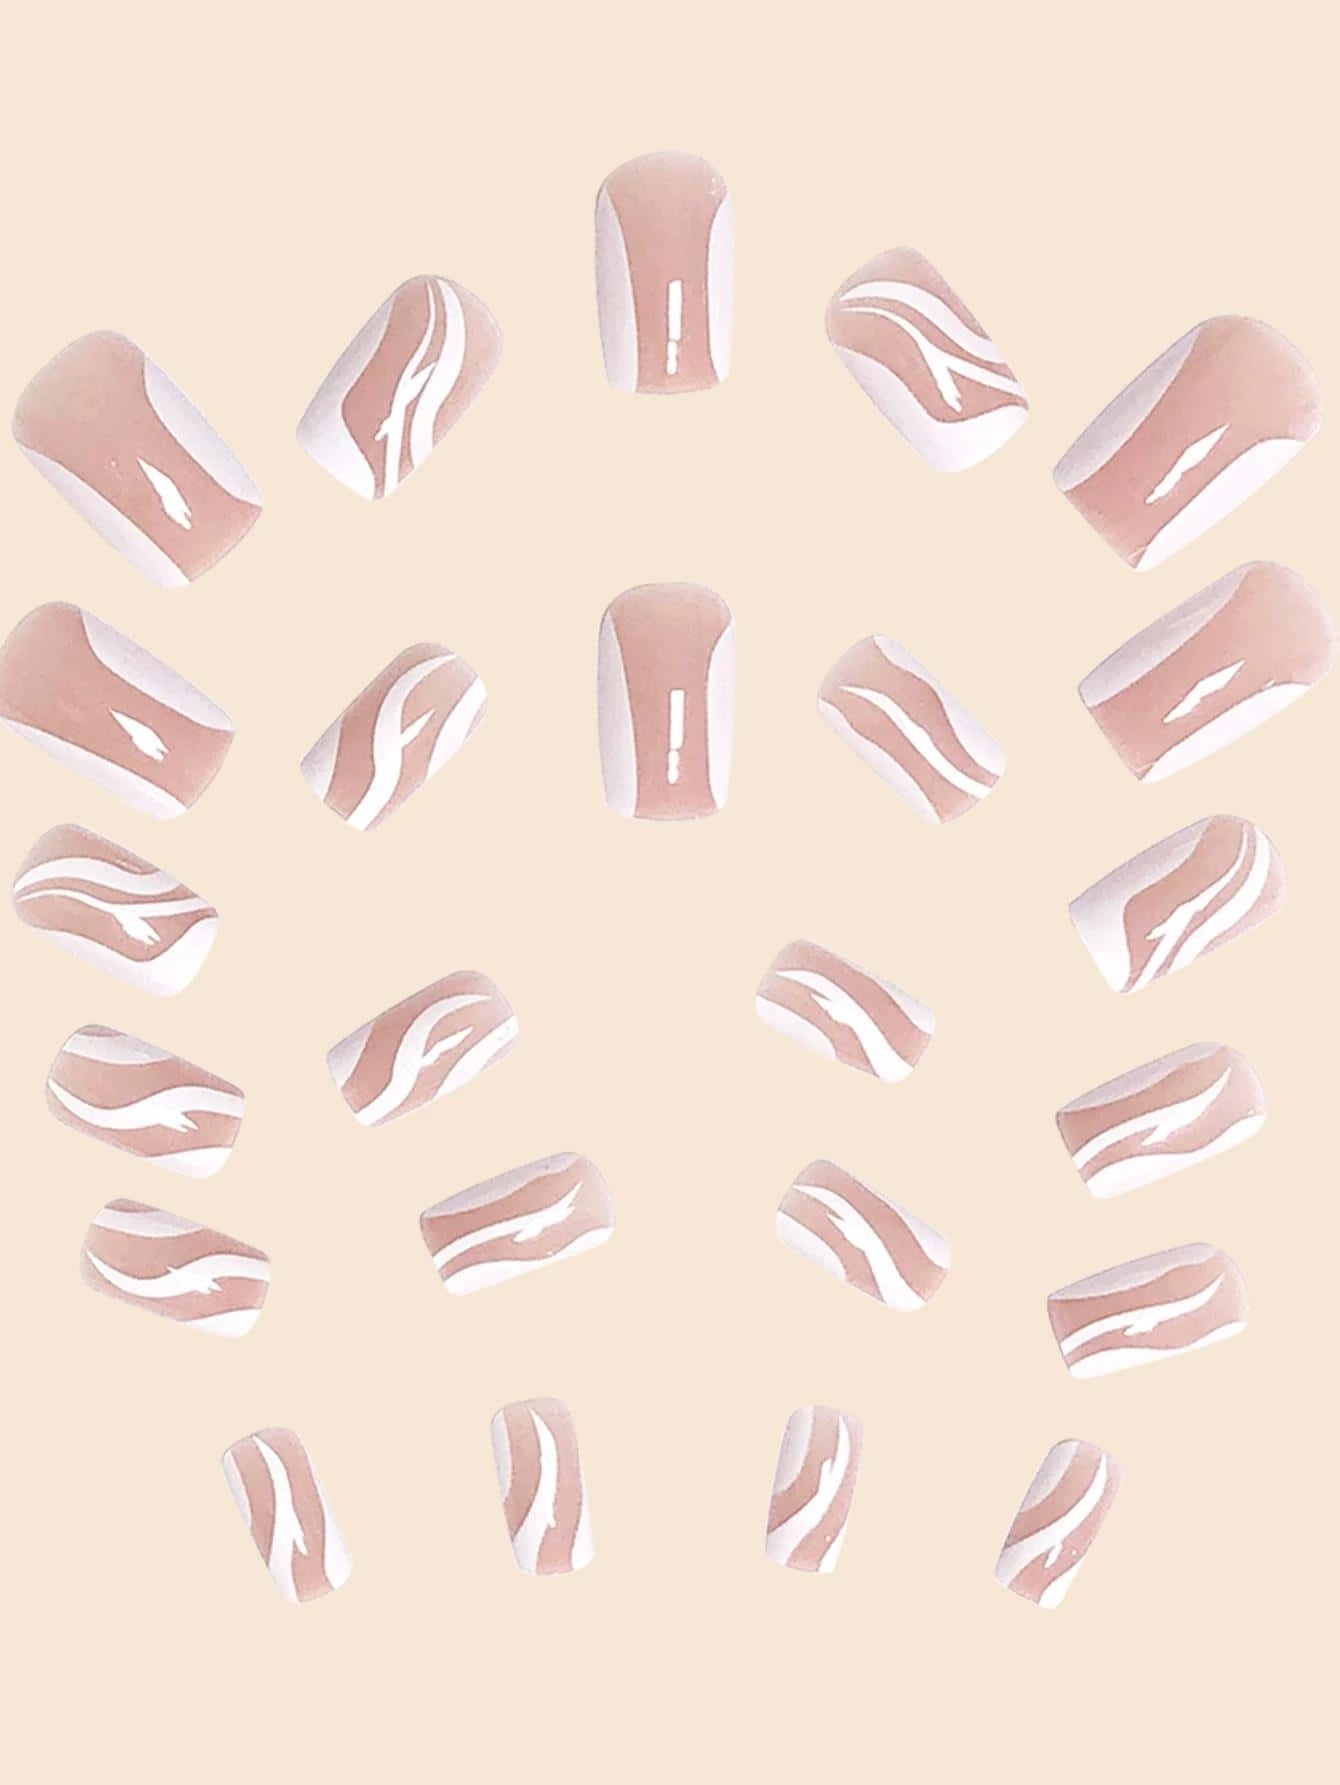 9880 b01-01 Veinticuatro piezas de uñas diseño en forma de remolino